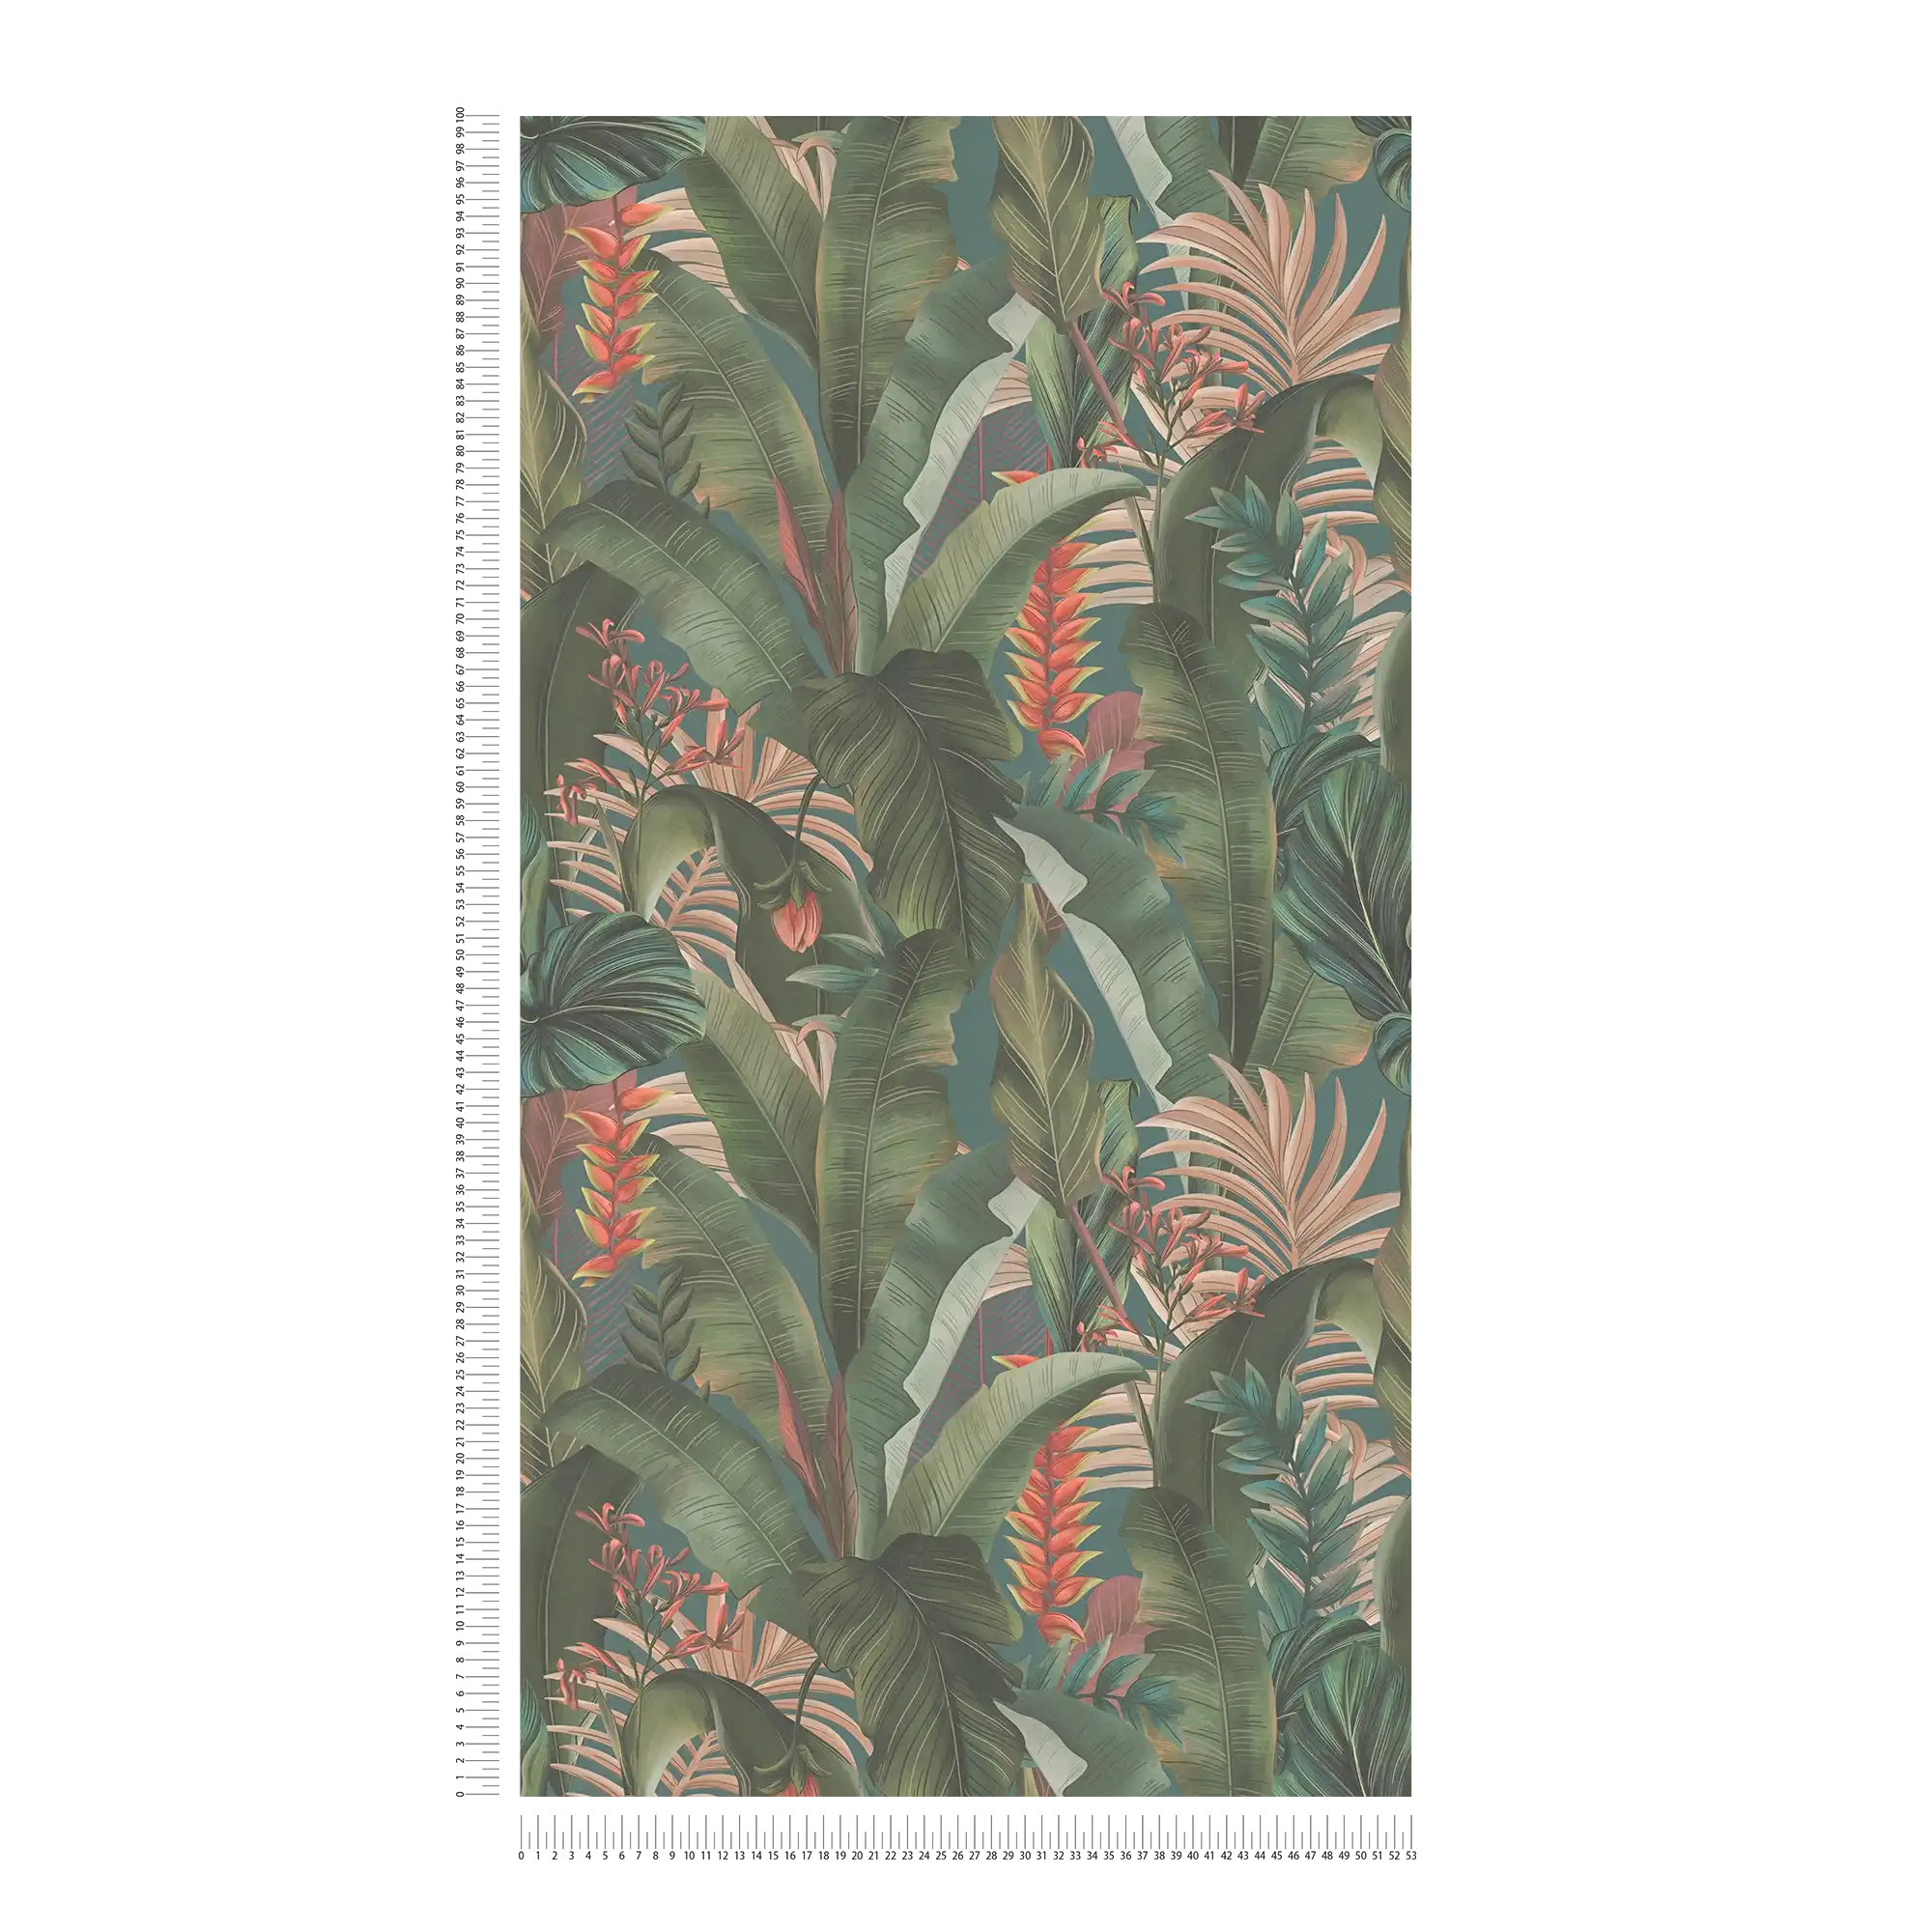             Jungle behang gebloemd met palmbladeren & bloemen mat gestructureerd - blauw, petrol, groen
        